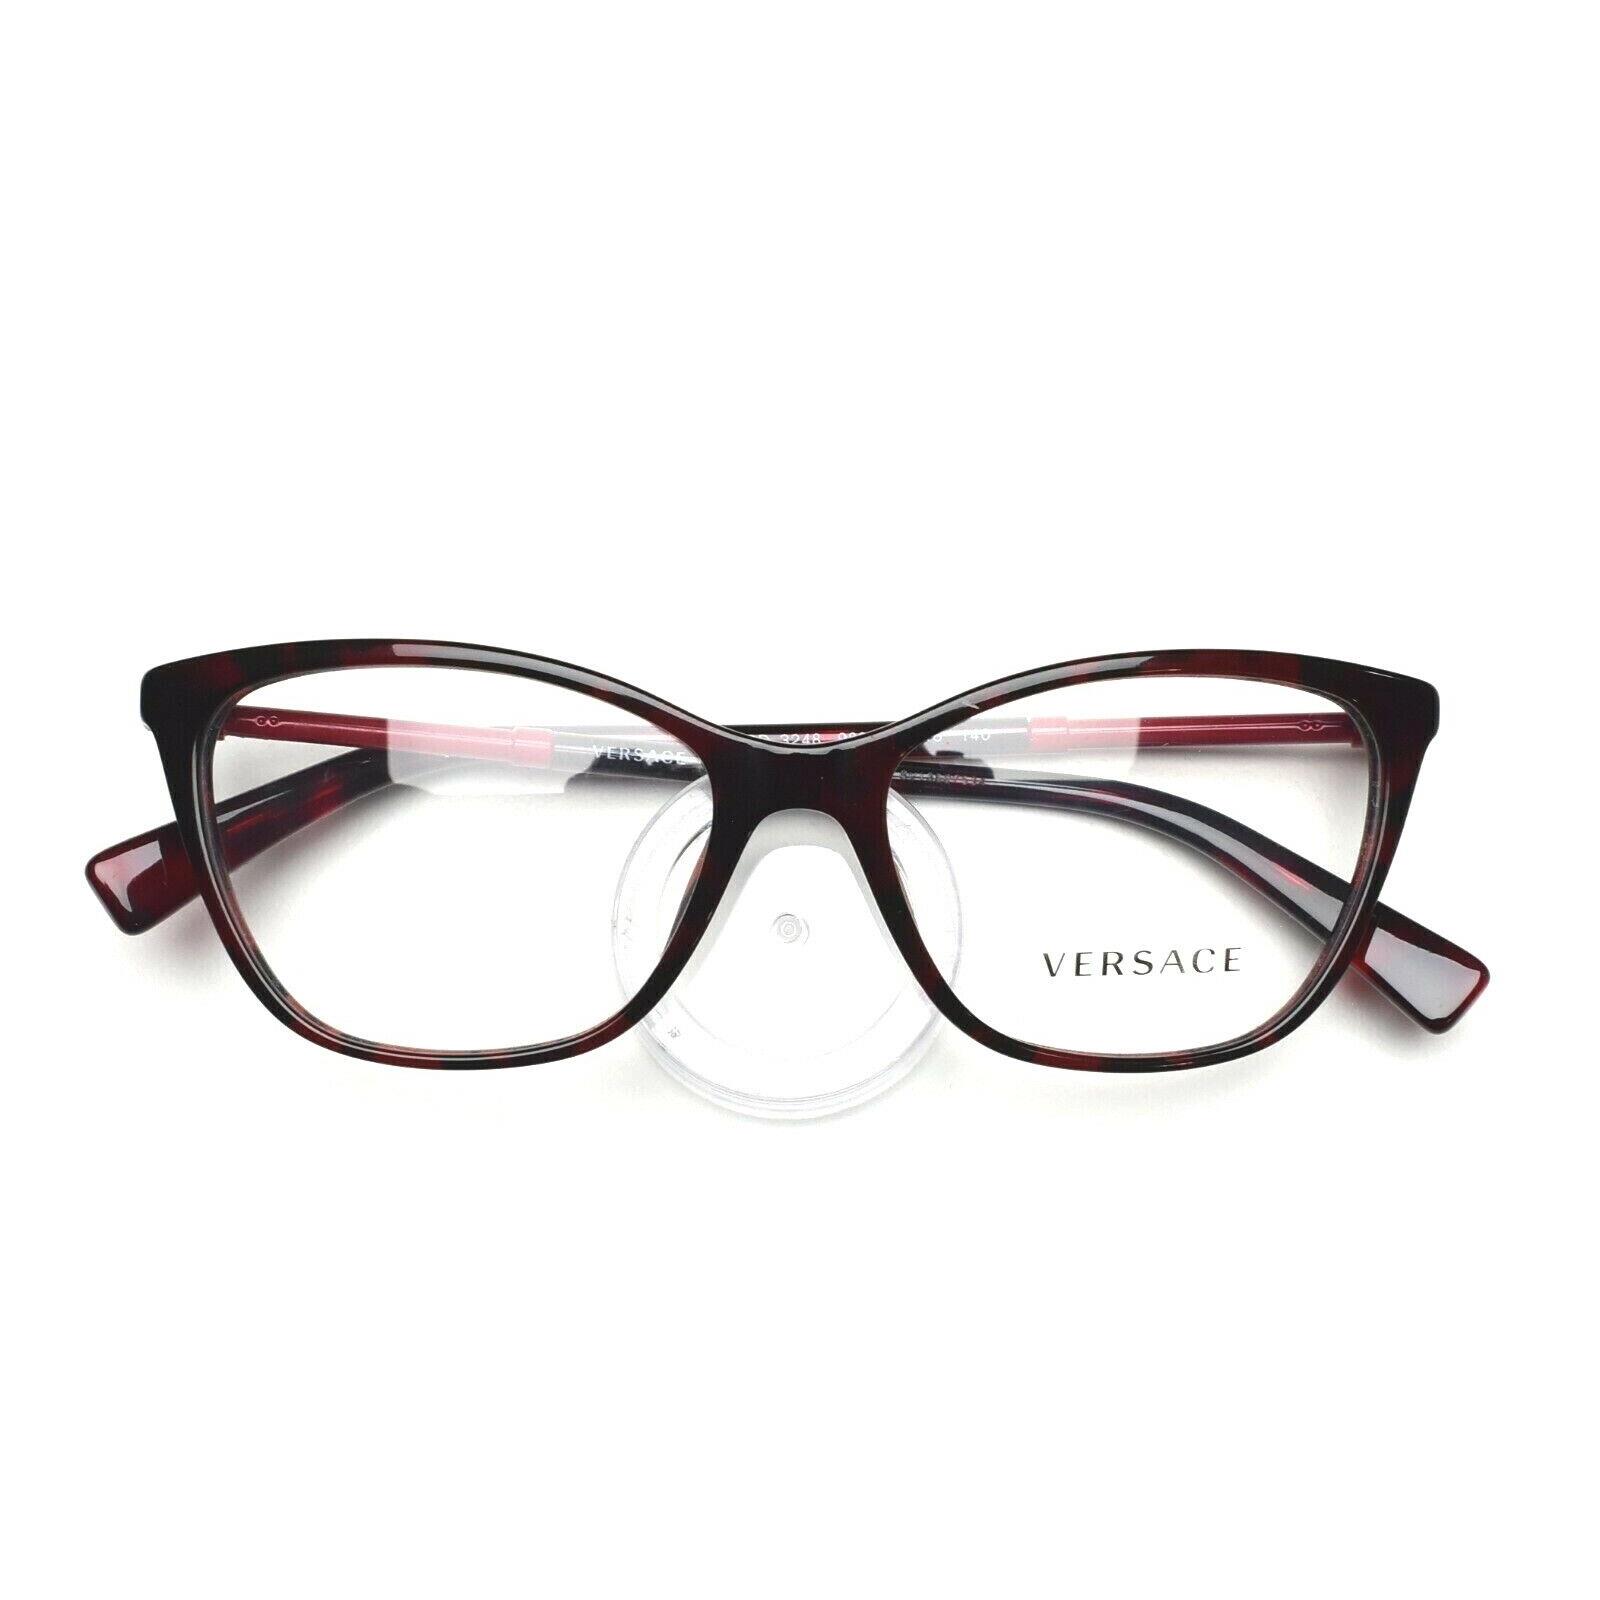 Versace Eyeglasses Frame 3248 989 Red Havana 54-16-140 Without Case - Tortoise Frame